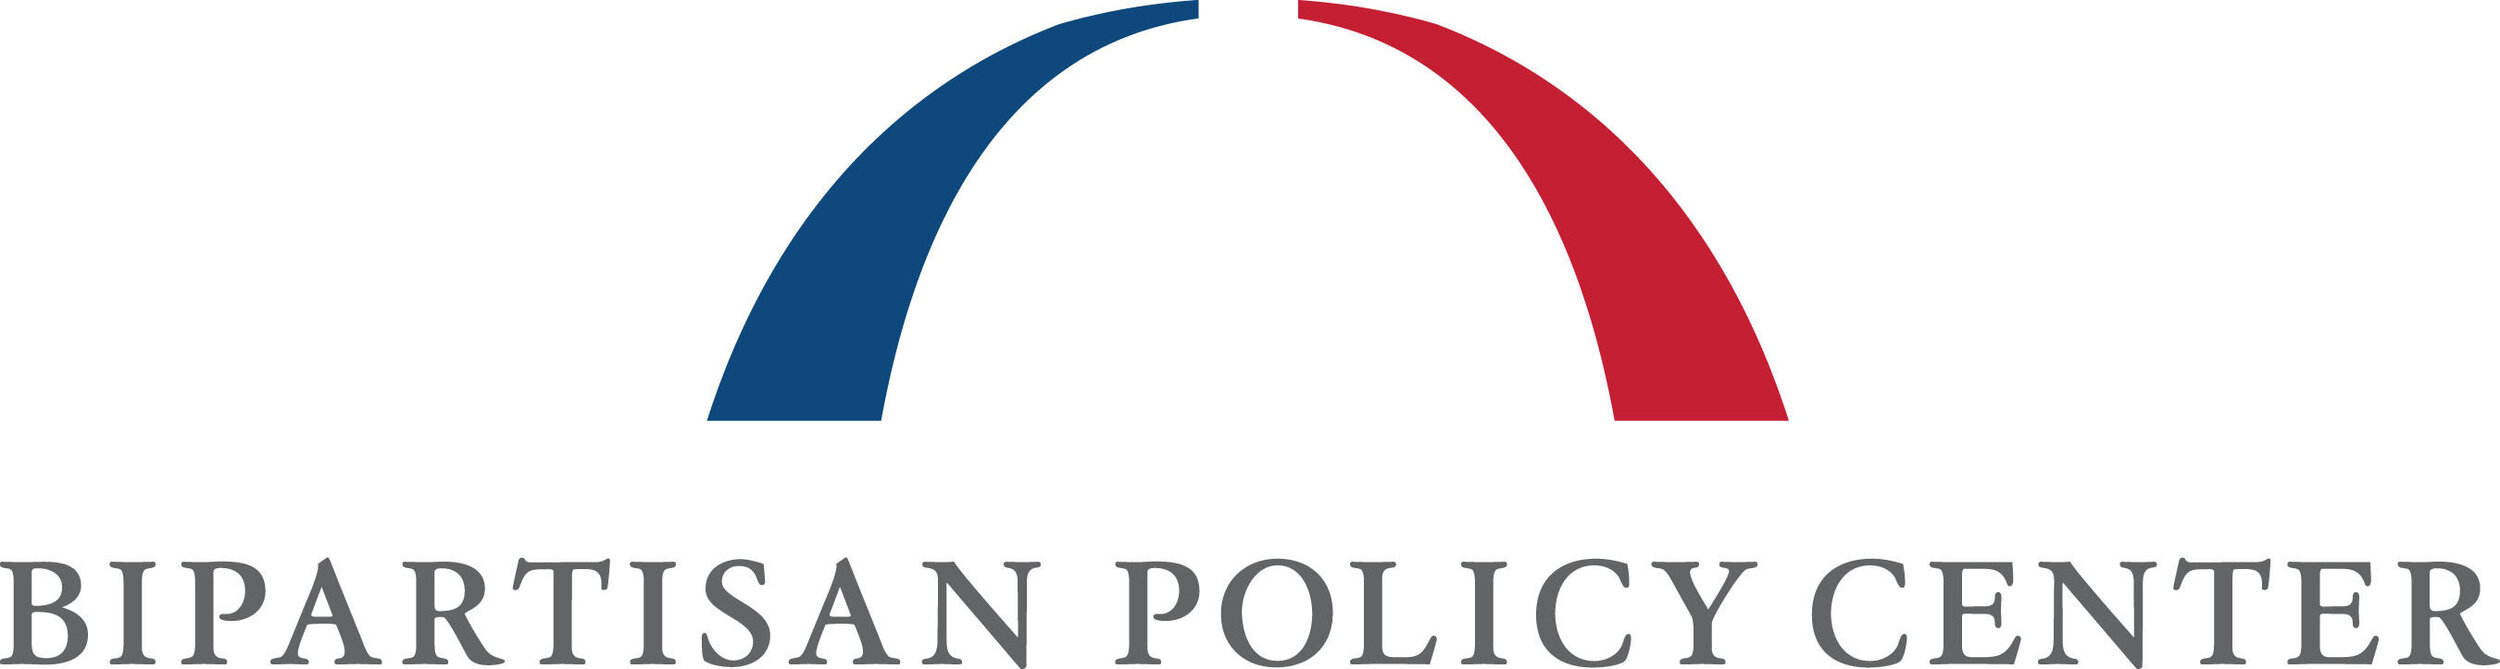 bipartisan policy center logo.jpeg